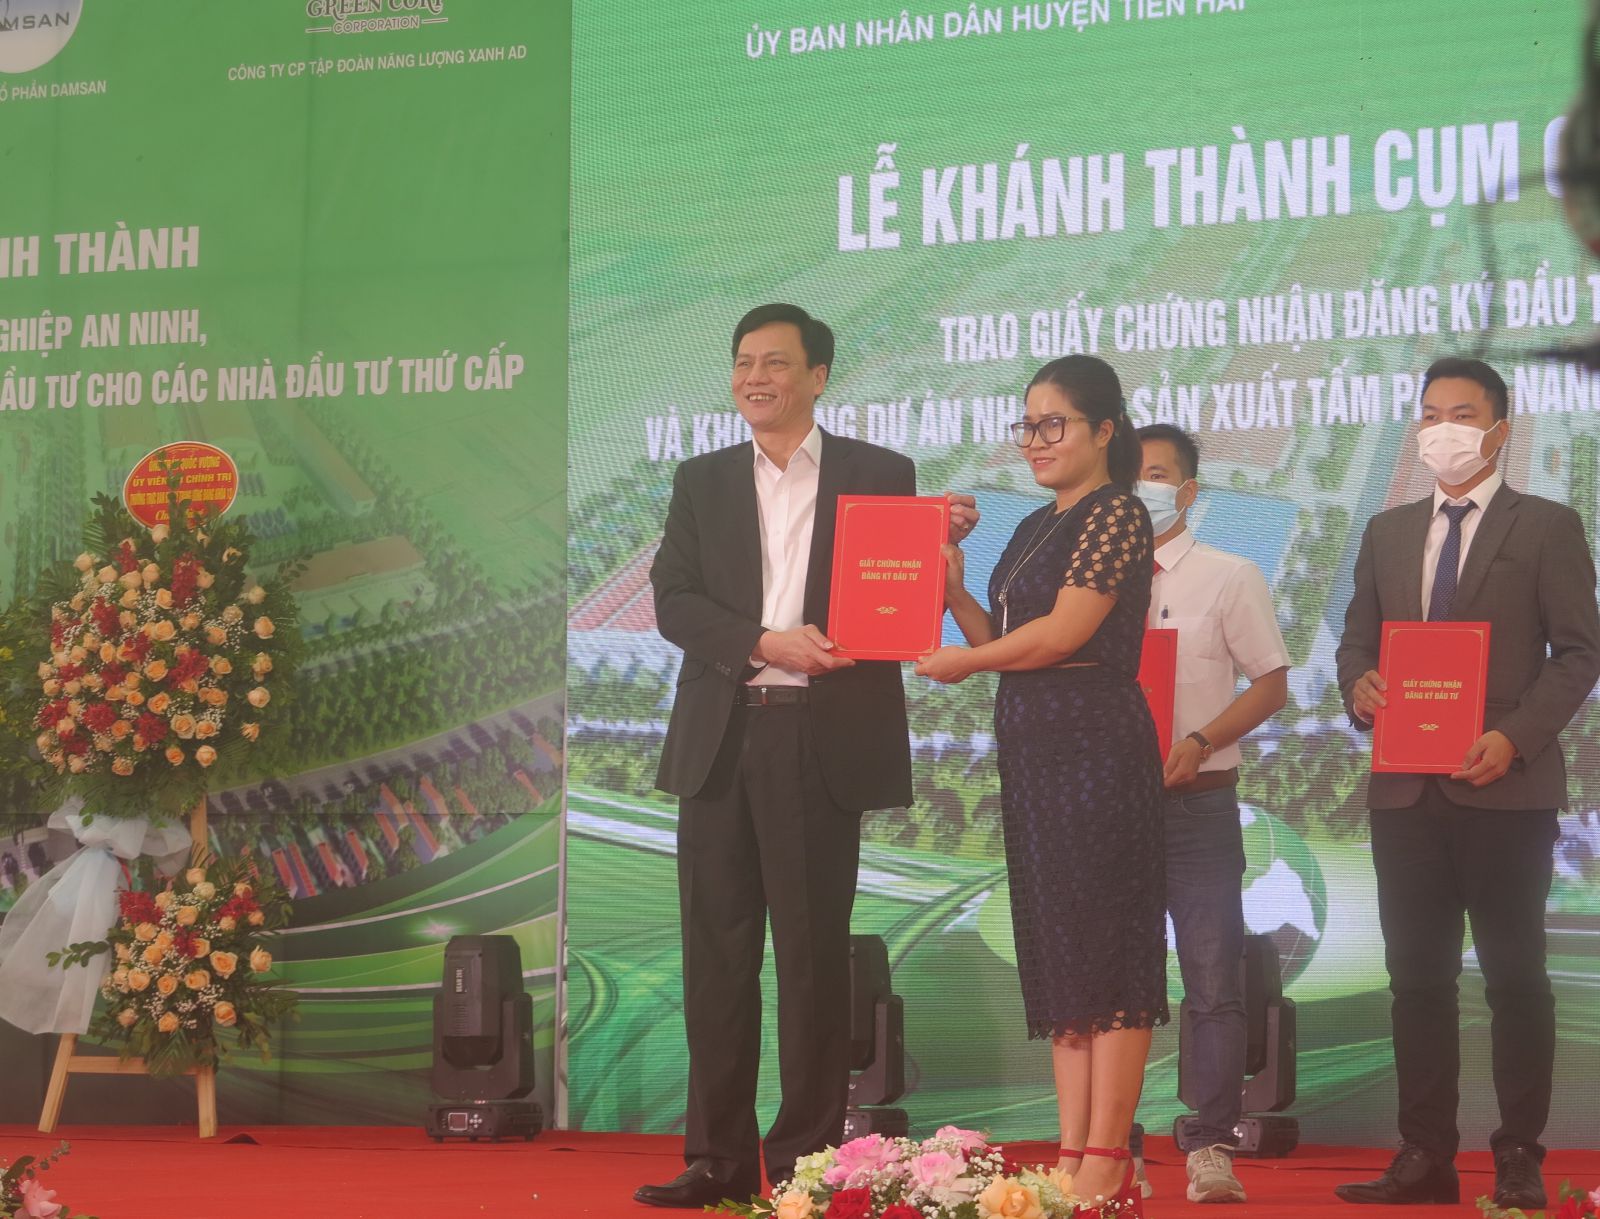 Đại diện chính quyền tỉnh Thái Bình trao Giấy chứng nhận đăng ký đầu tư cho nhà đầu tư thứ cấp 